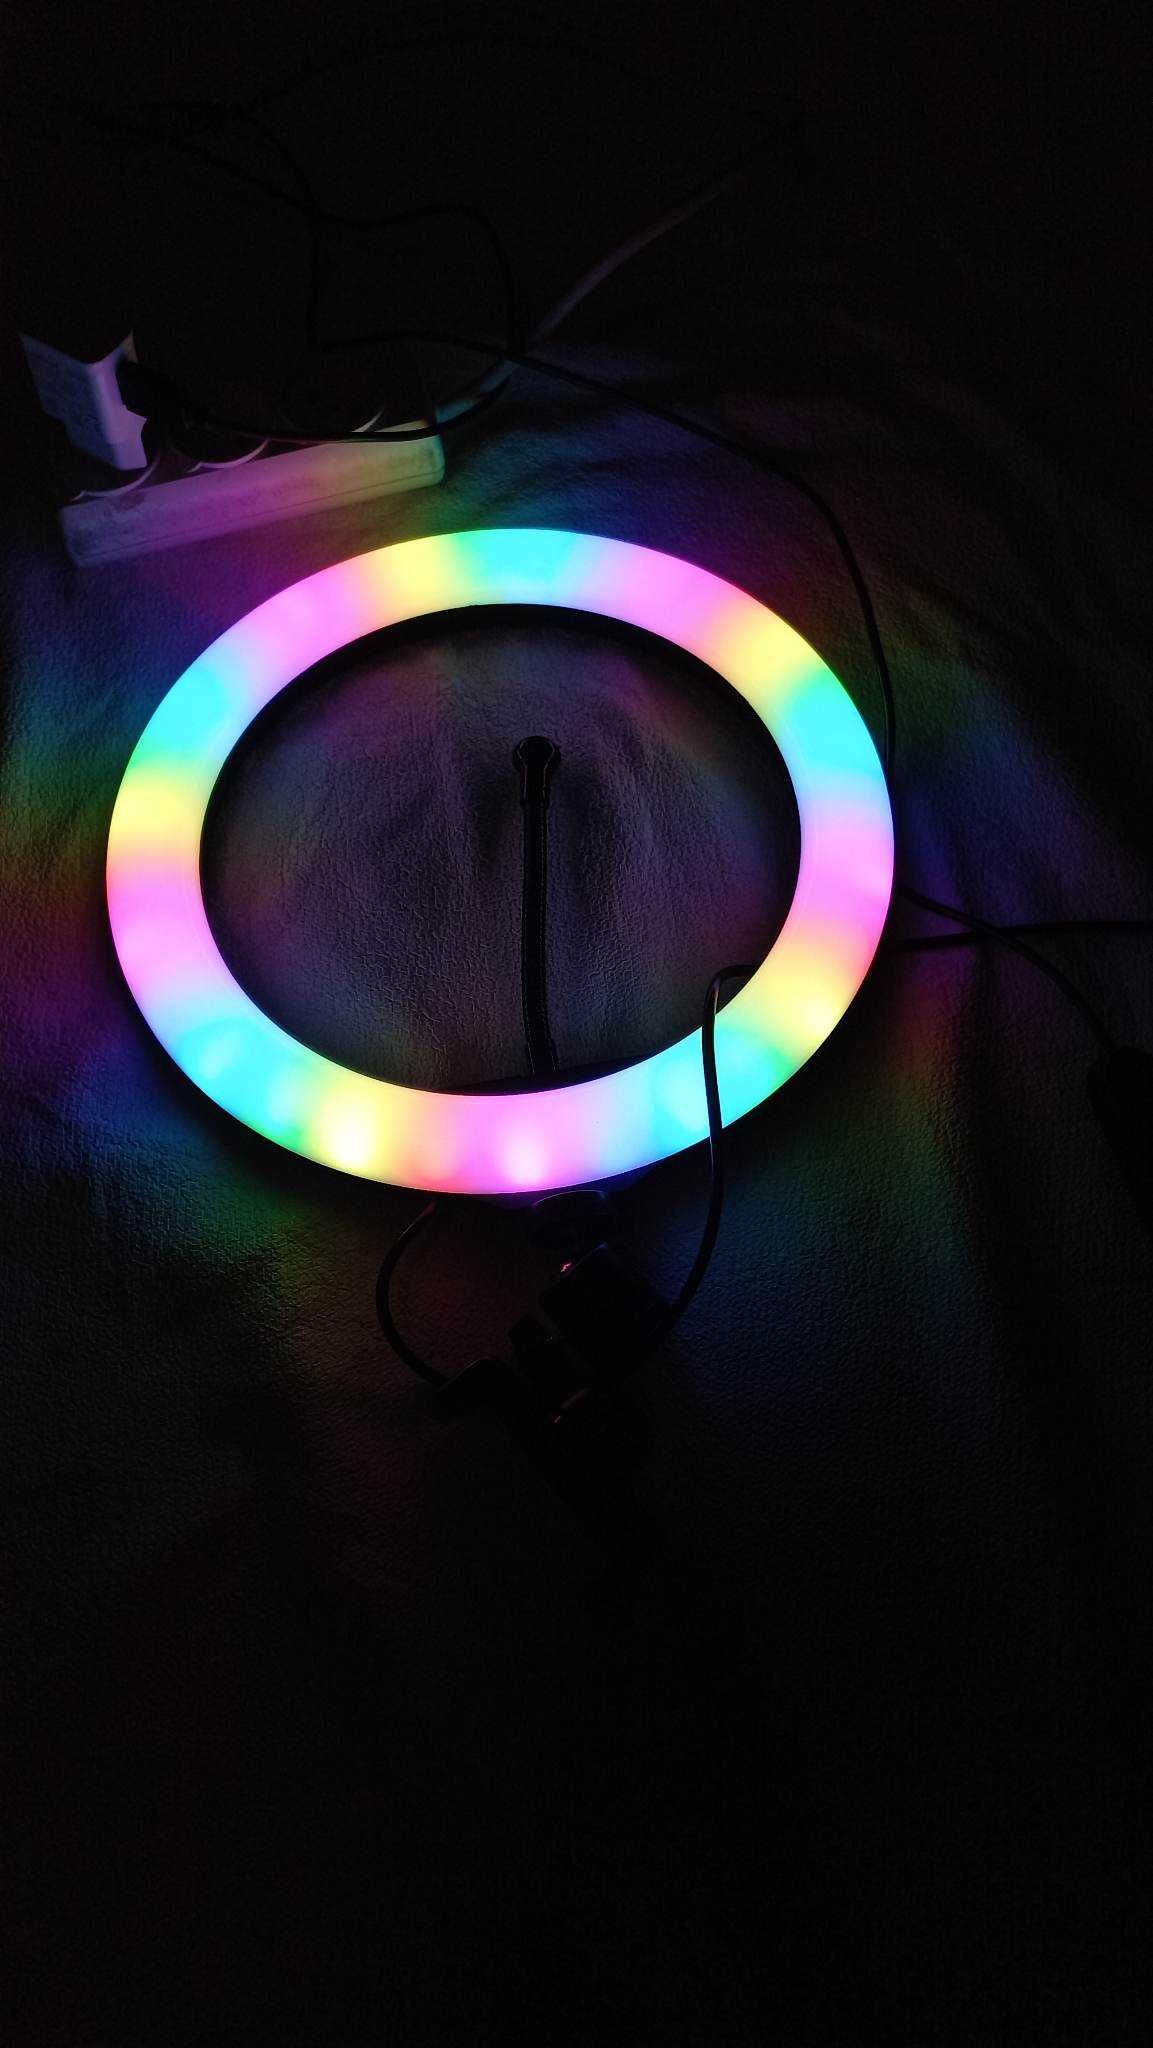 Кільцева LED лампа RGB-RL10 діаметром 26 см.селфи лампа.круглая лампа